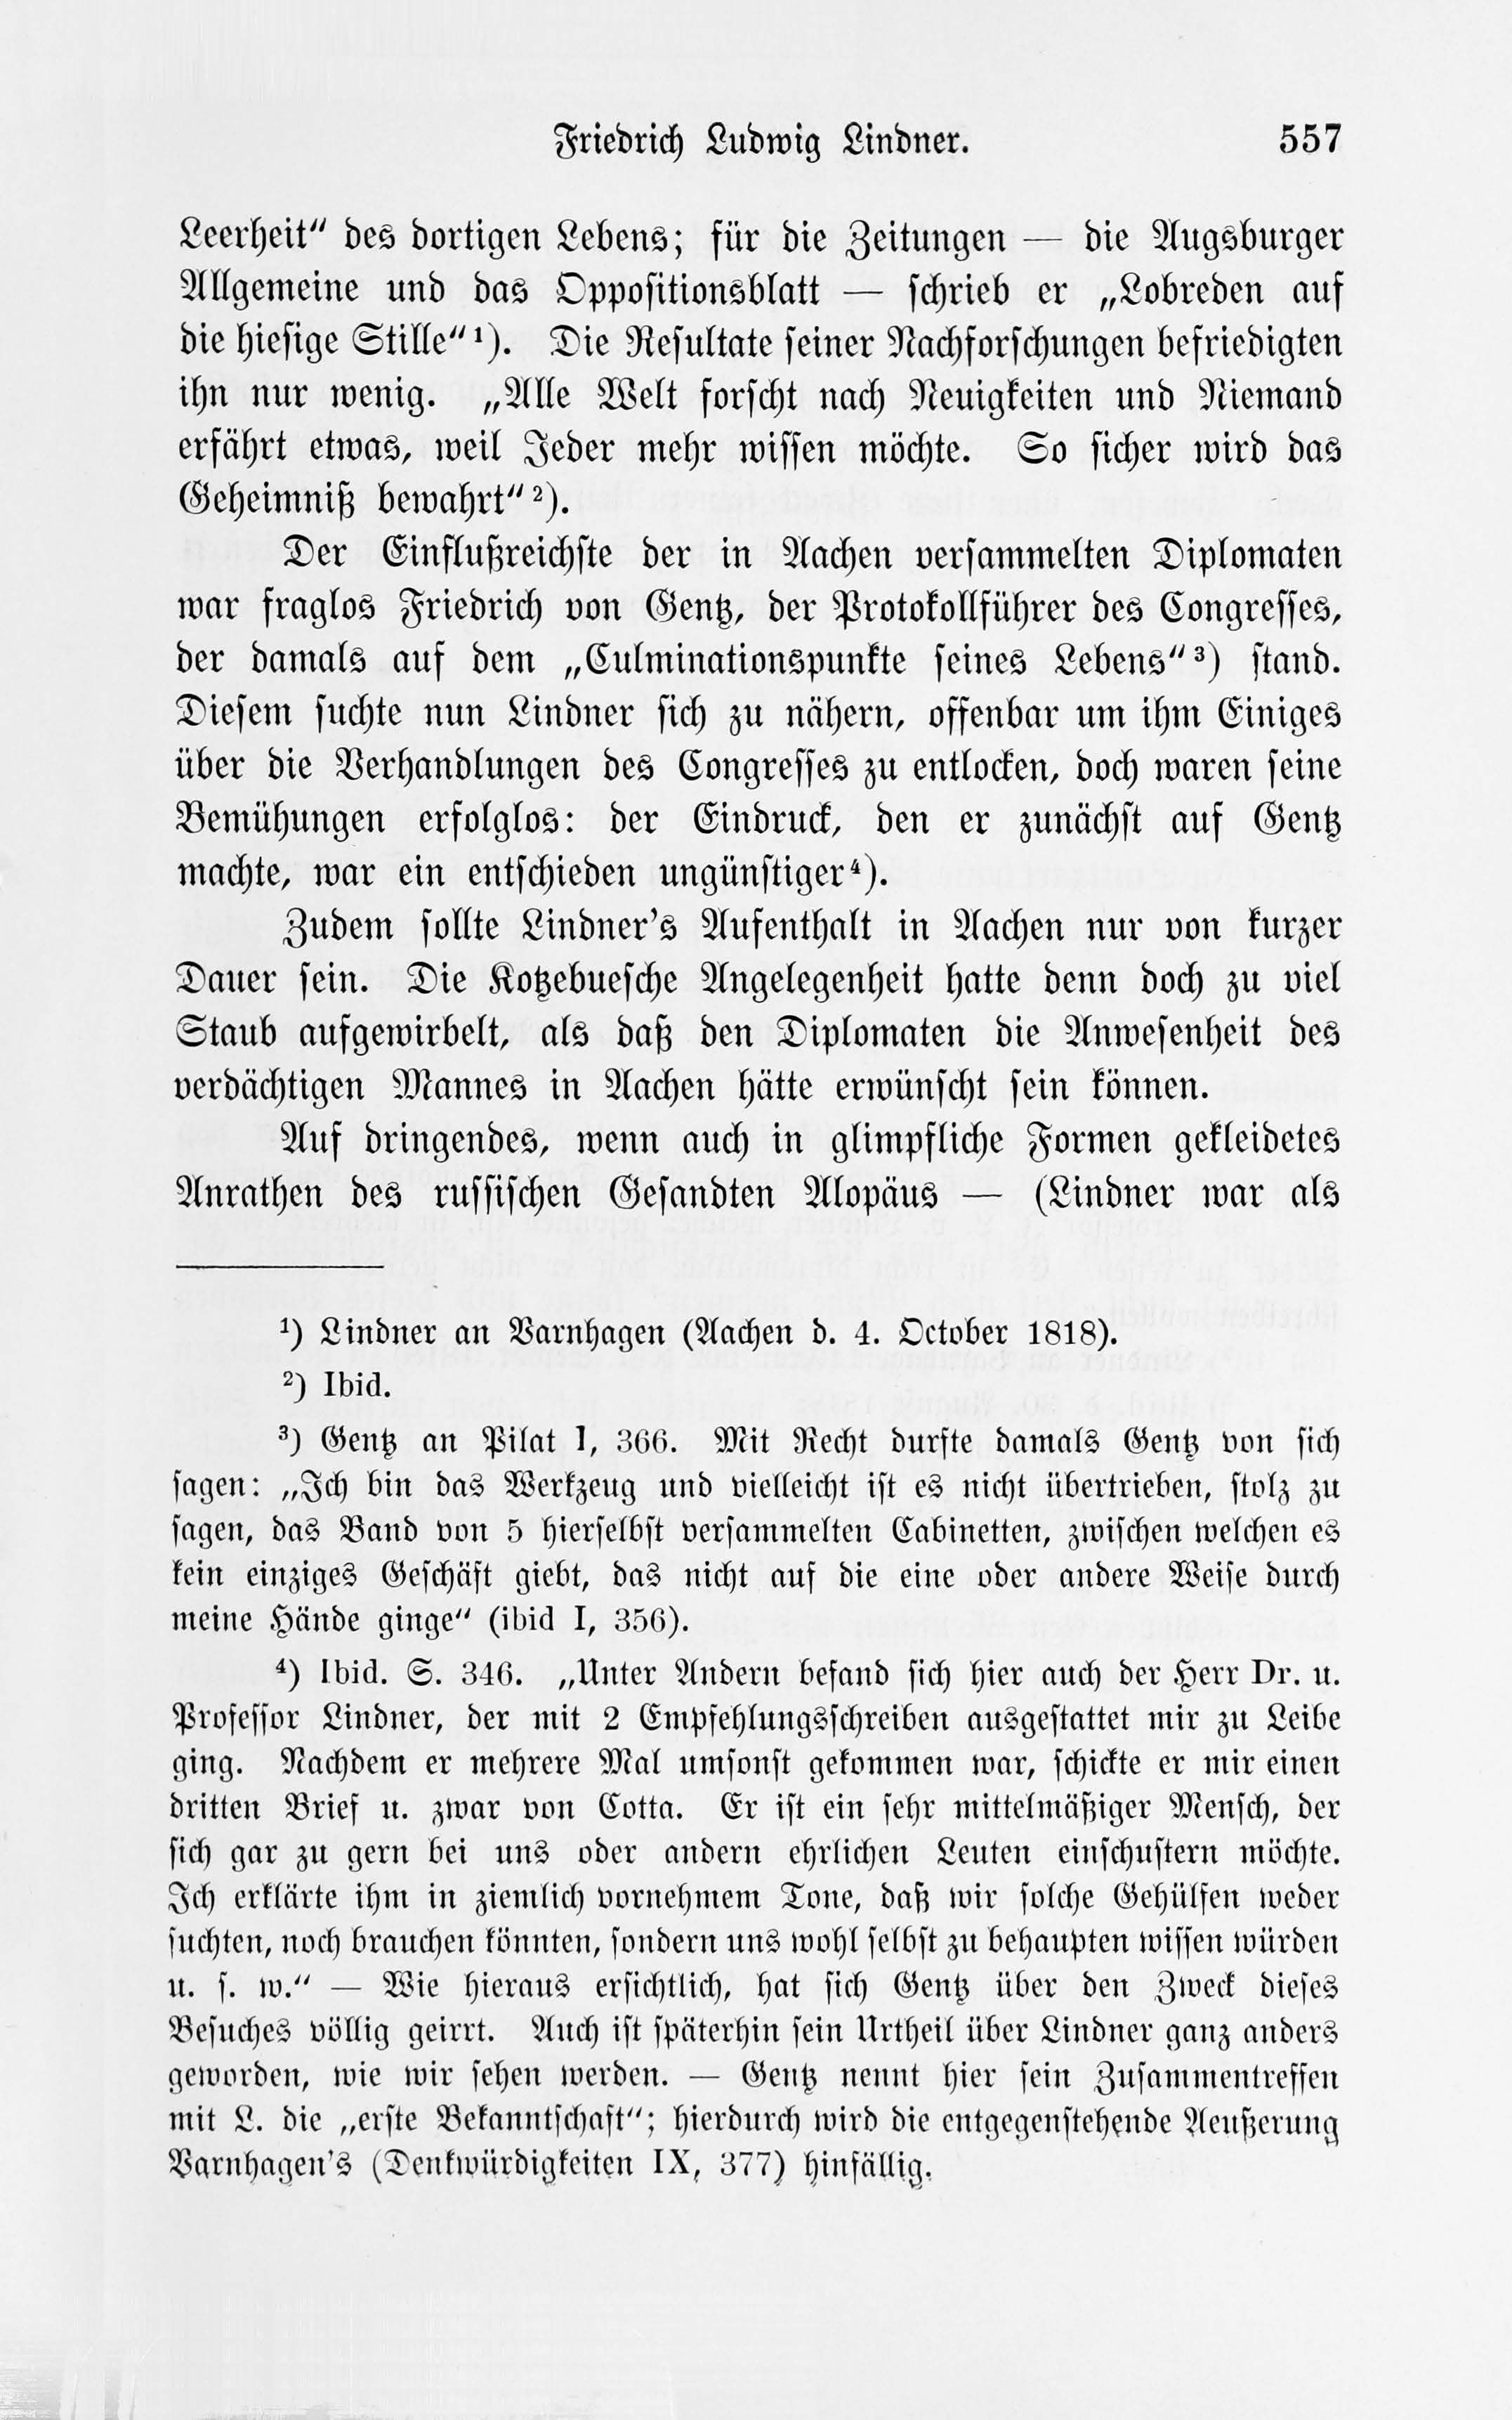 Leben und Schriften des Kurländers Friedrich Ludwig Lindner [1] (1895) | 27. Main body of text